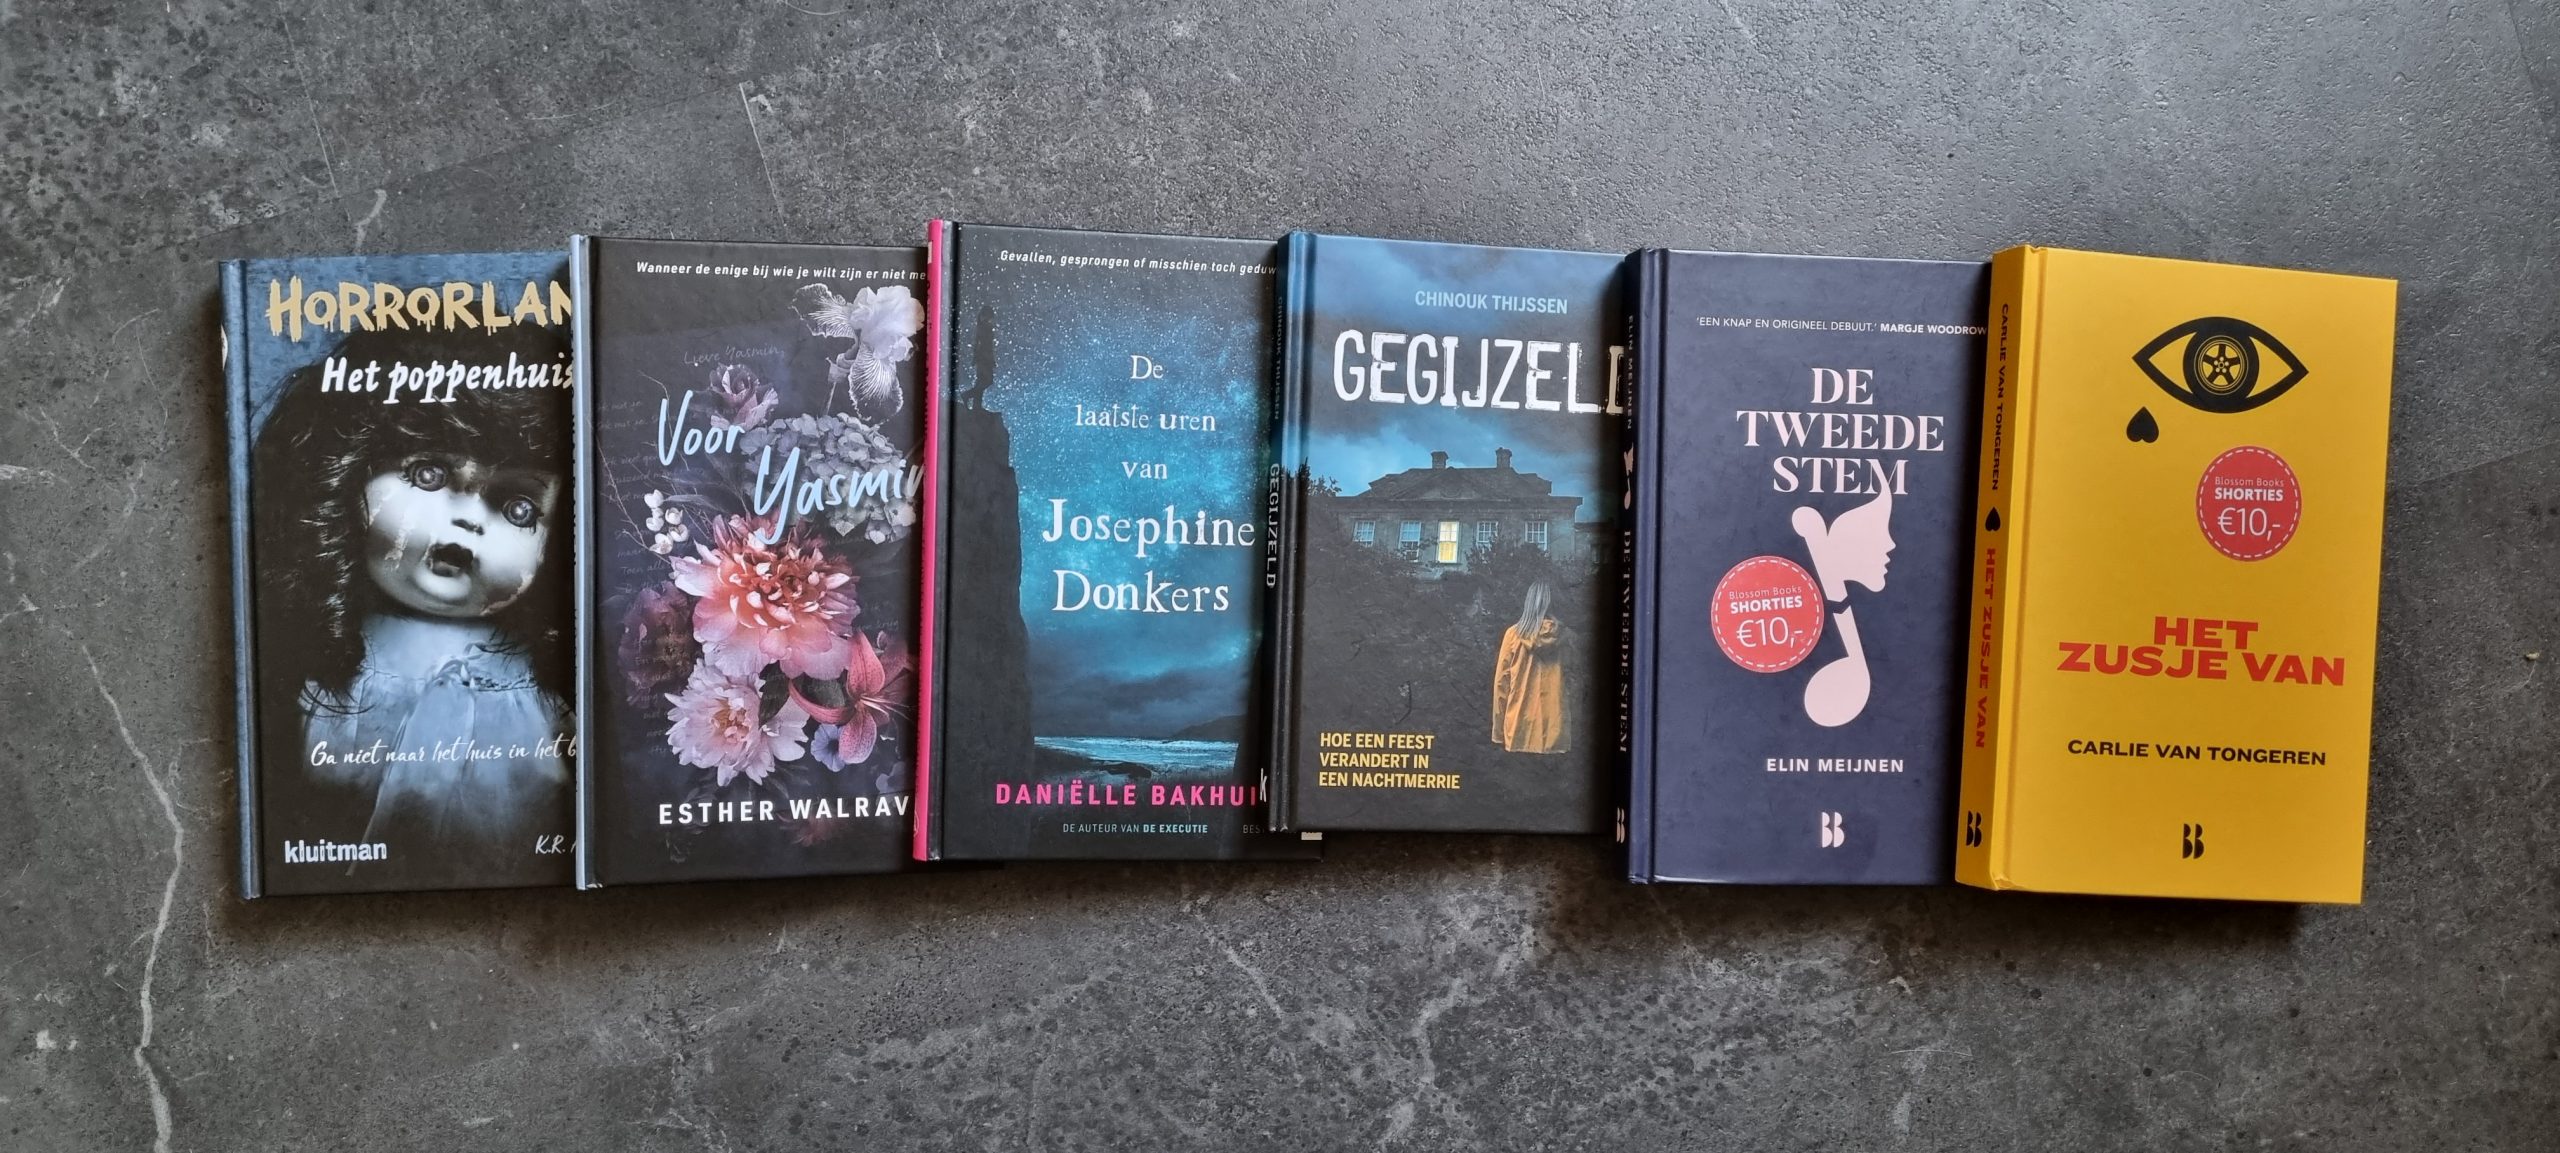 Koe kennisgeving Gelijkwaardig 4 toffe dunne boekenreeksen voor jongeren - Geekish.nl